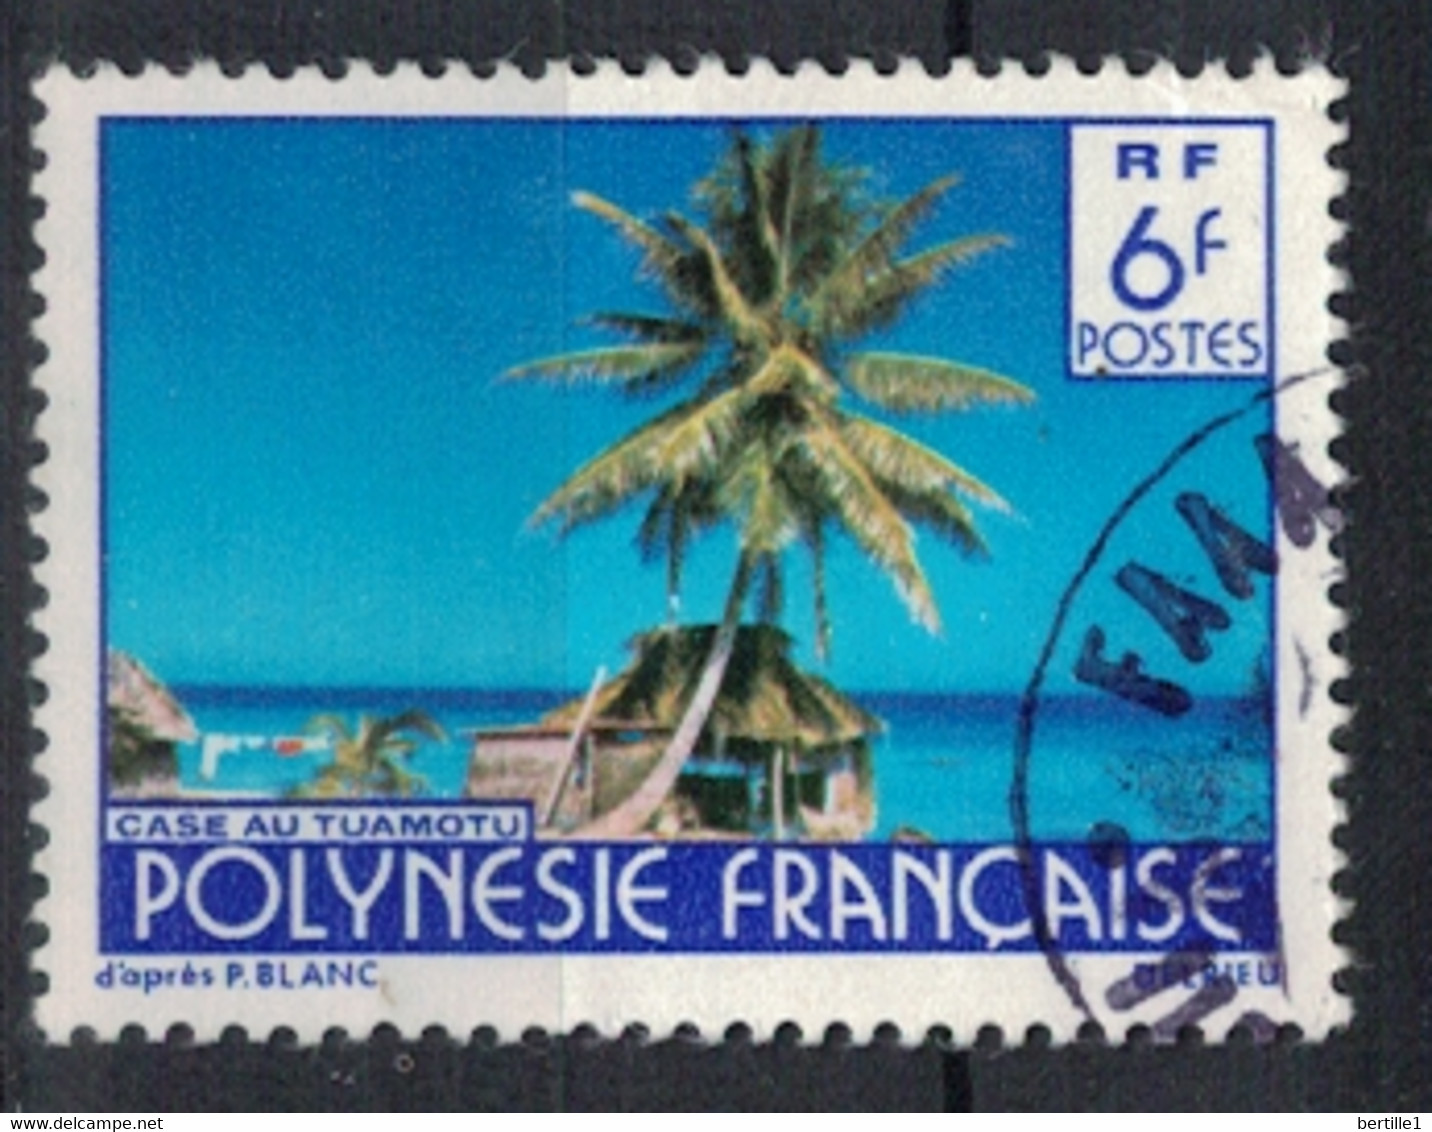 POLYNESIE FRANCAISE           N°  YVERT  137   OBLITERE     ( OB    06/ 37 ) - Usati